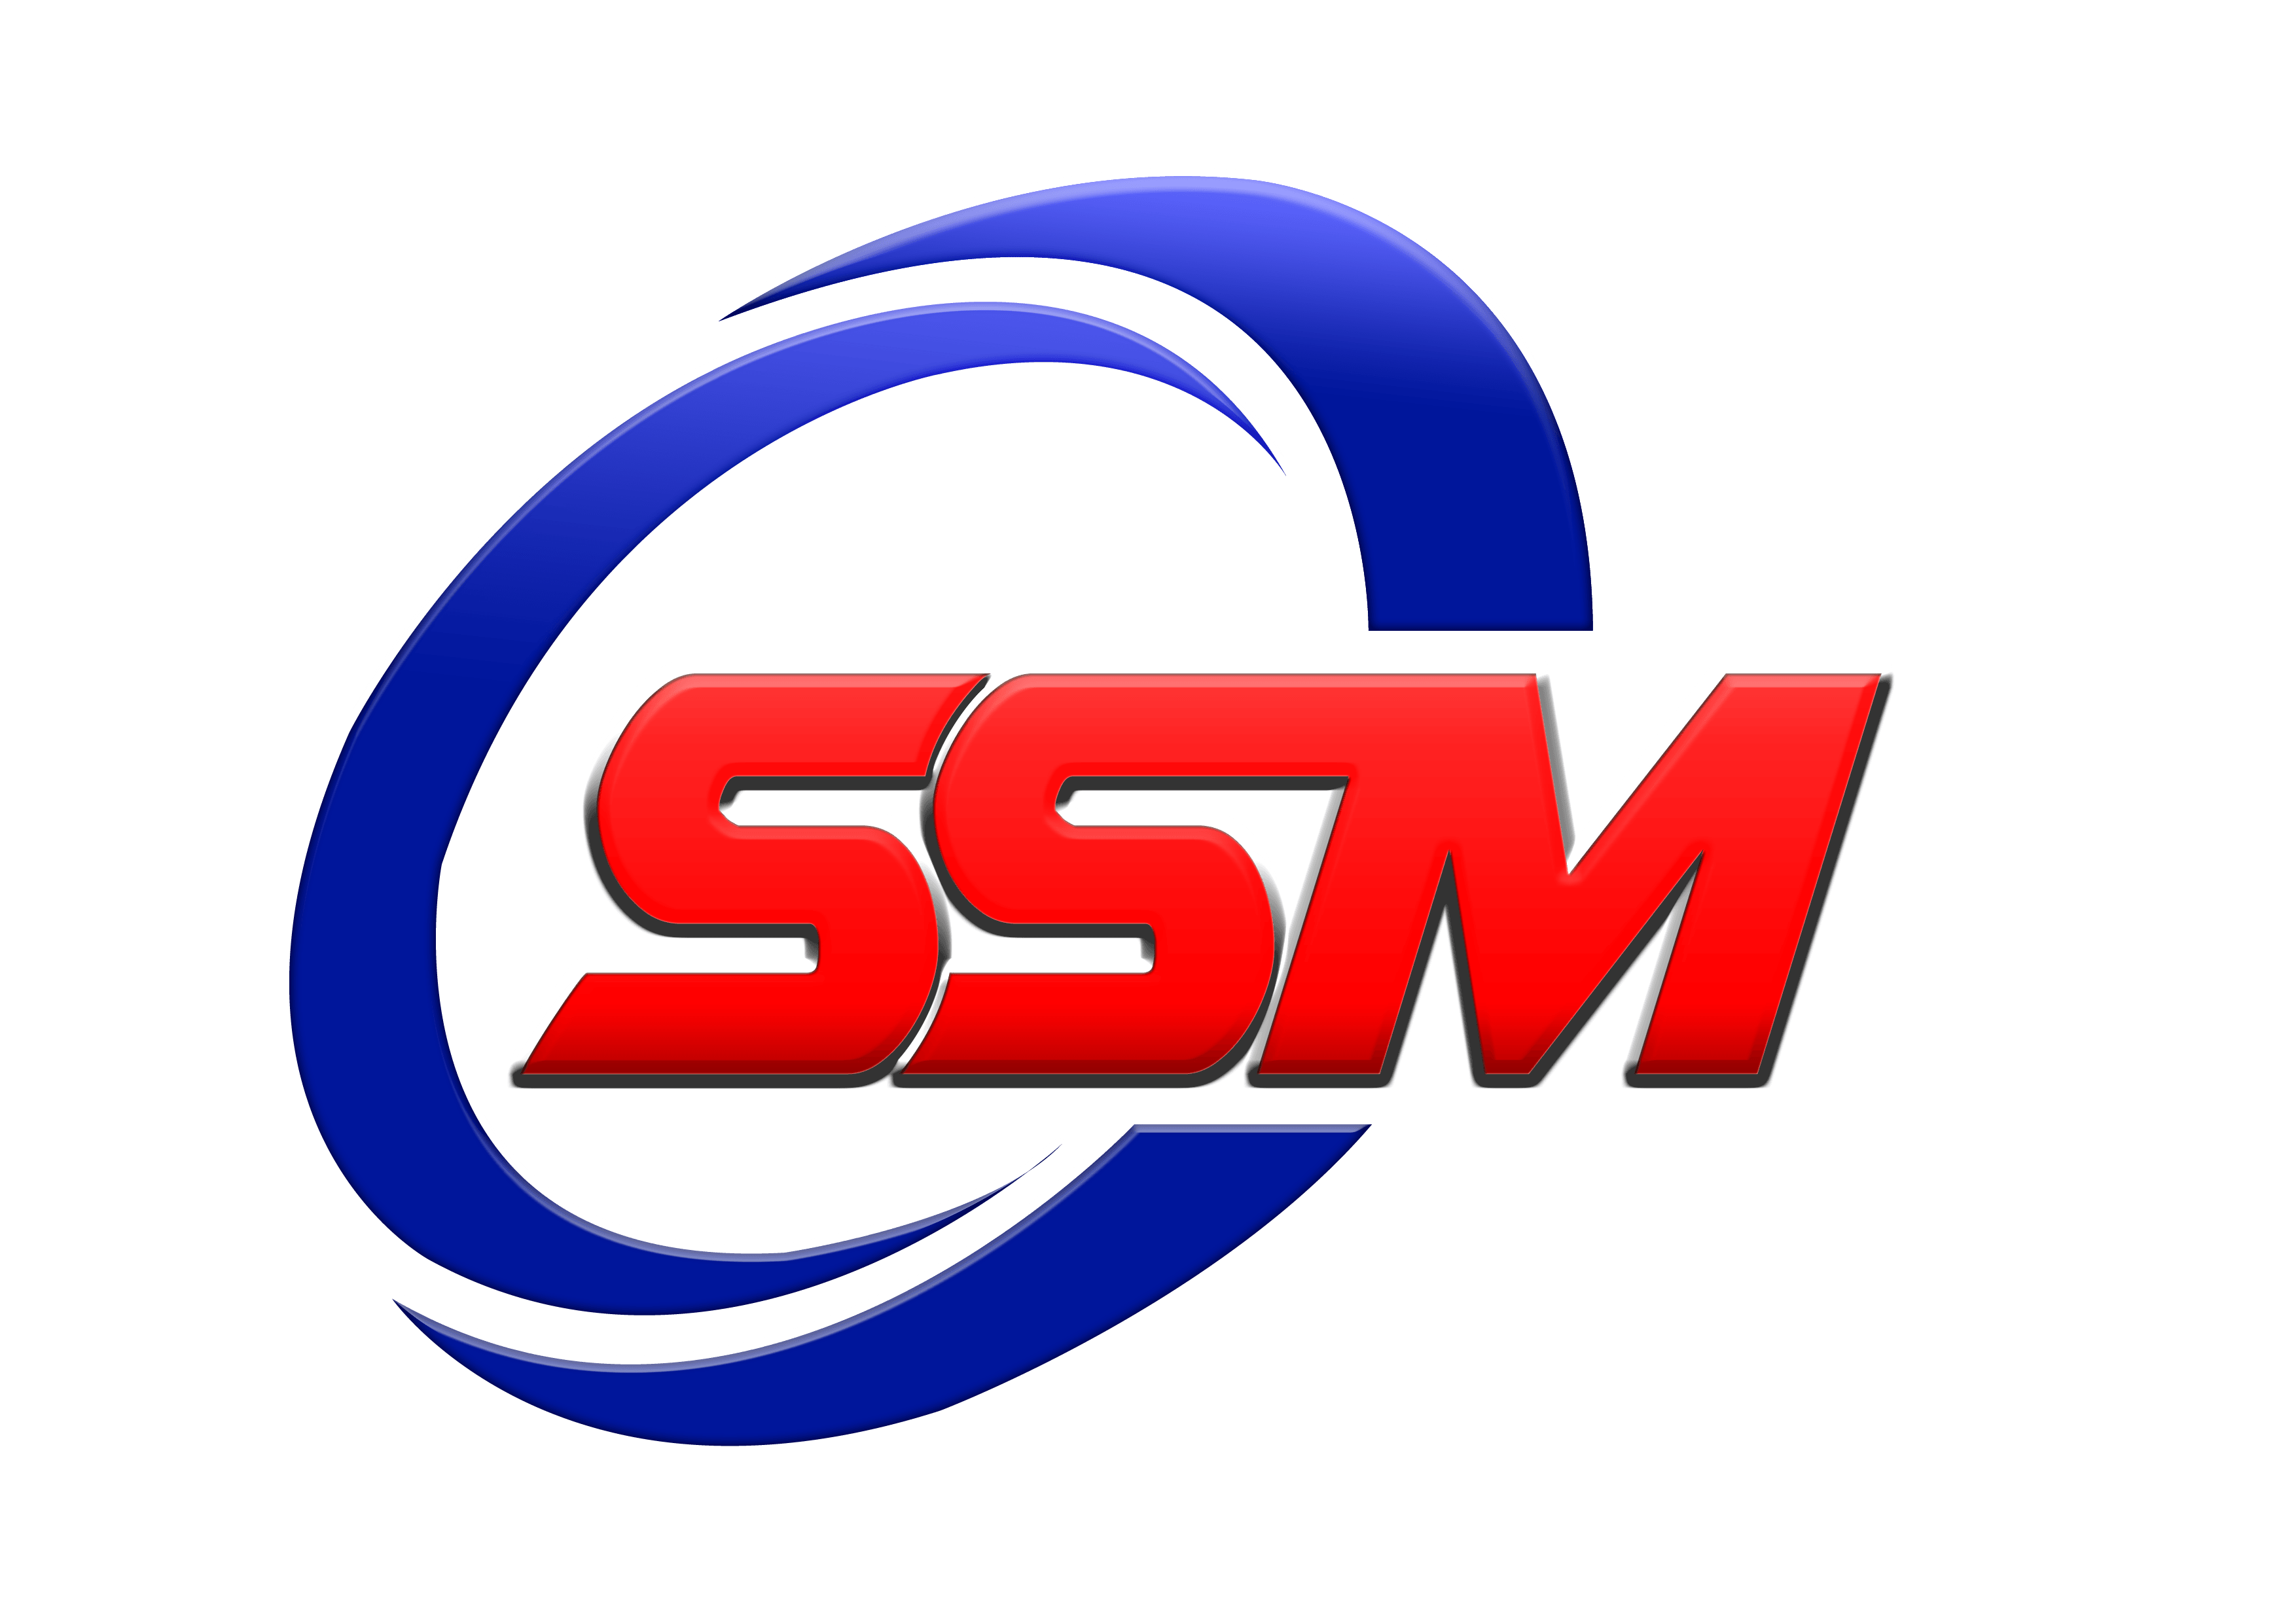 SSM letter logo vector design, SSM simple and modern logo. SSM luxurious  alphabet design 31770103 Vector Art at Vecteezy